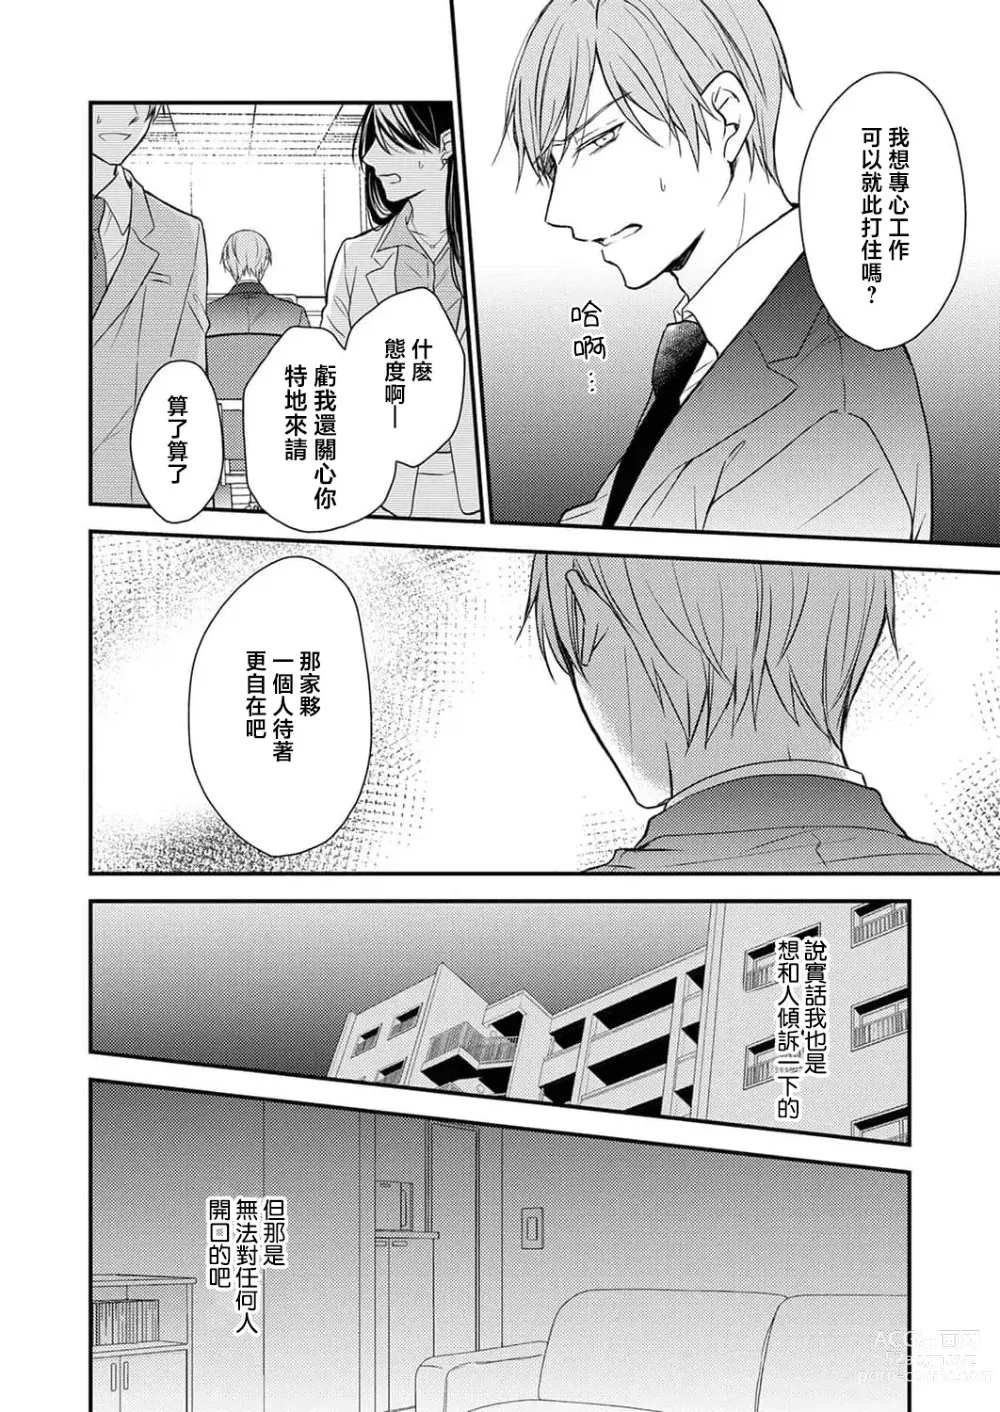 Page 6 of manga 陪睡男友的恋爱疗法 1